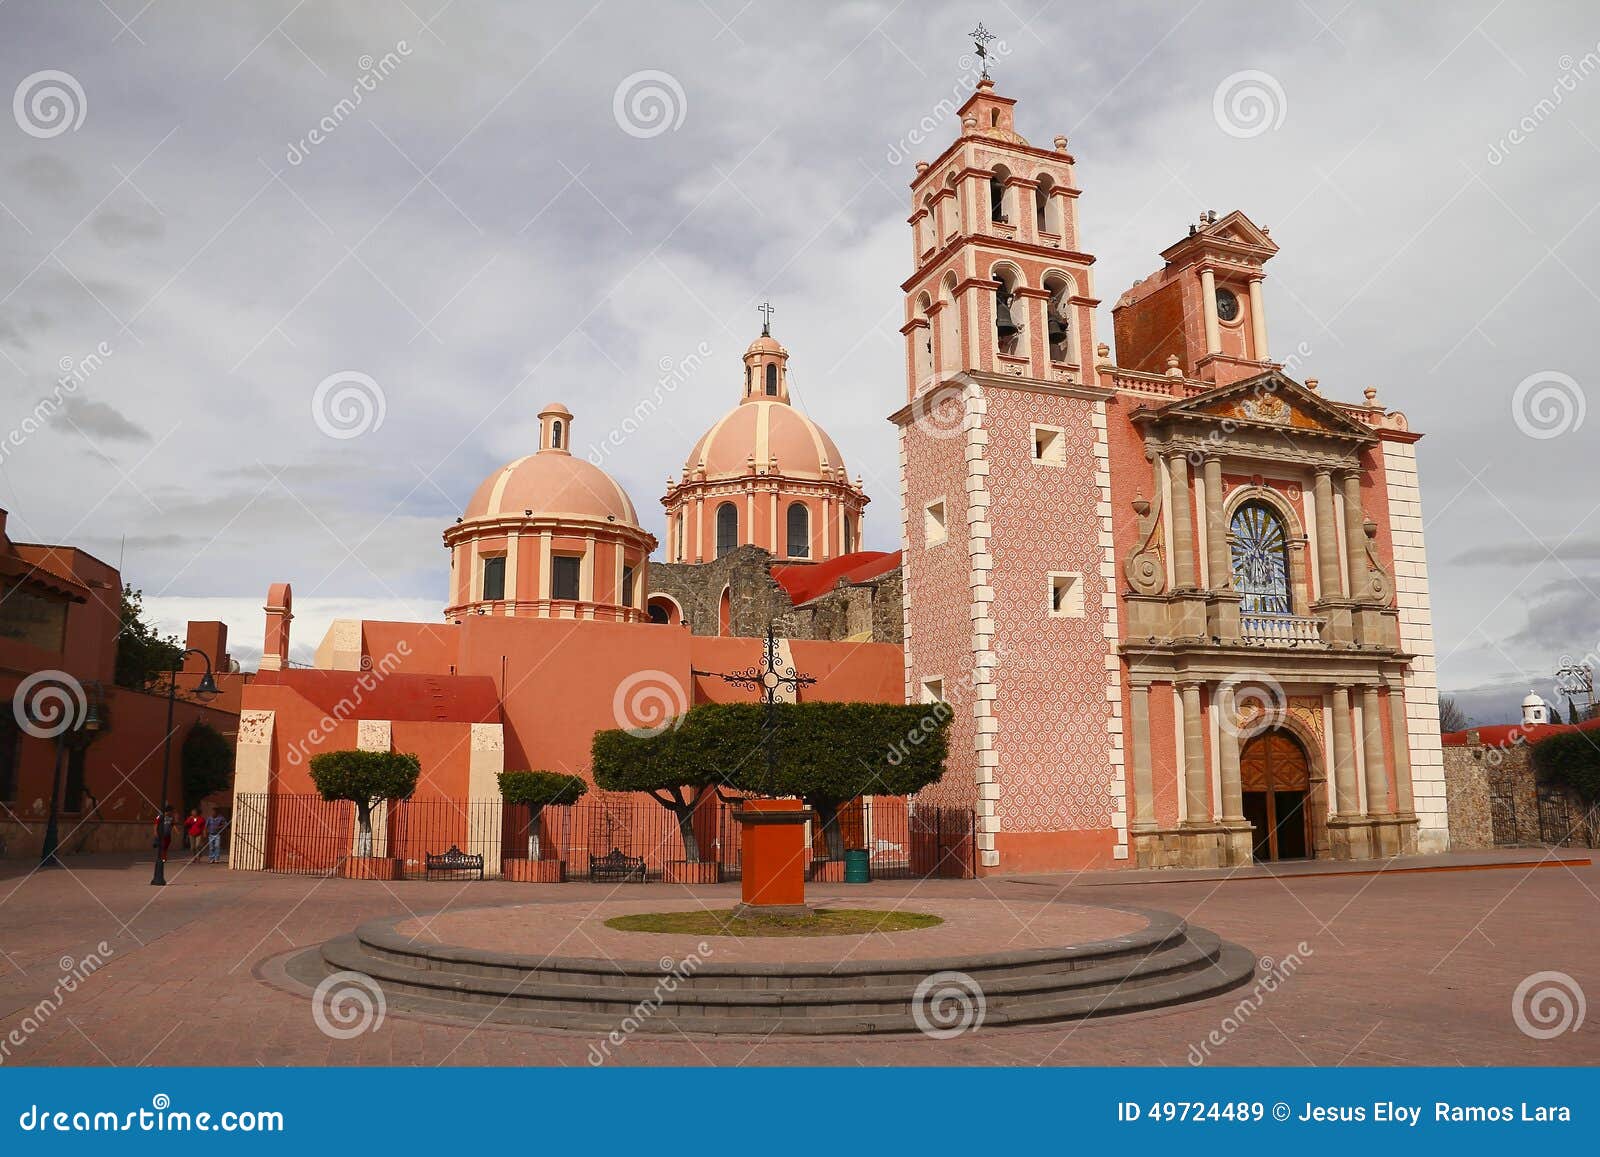 church in tequisquiapan queretaro, mexico ii